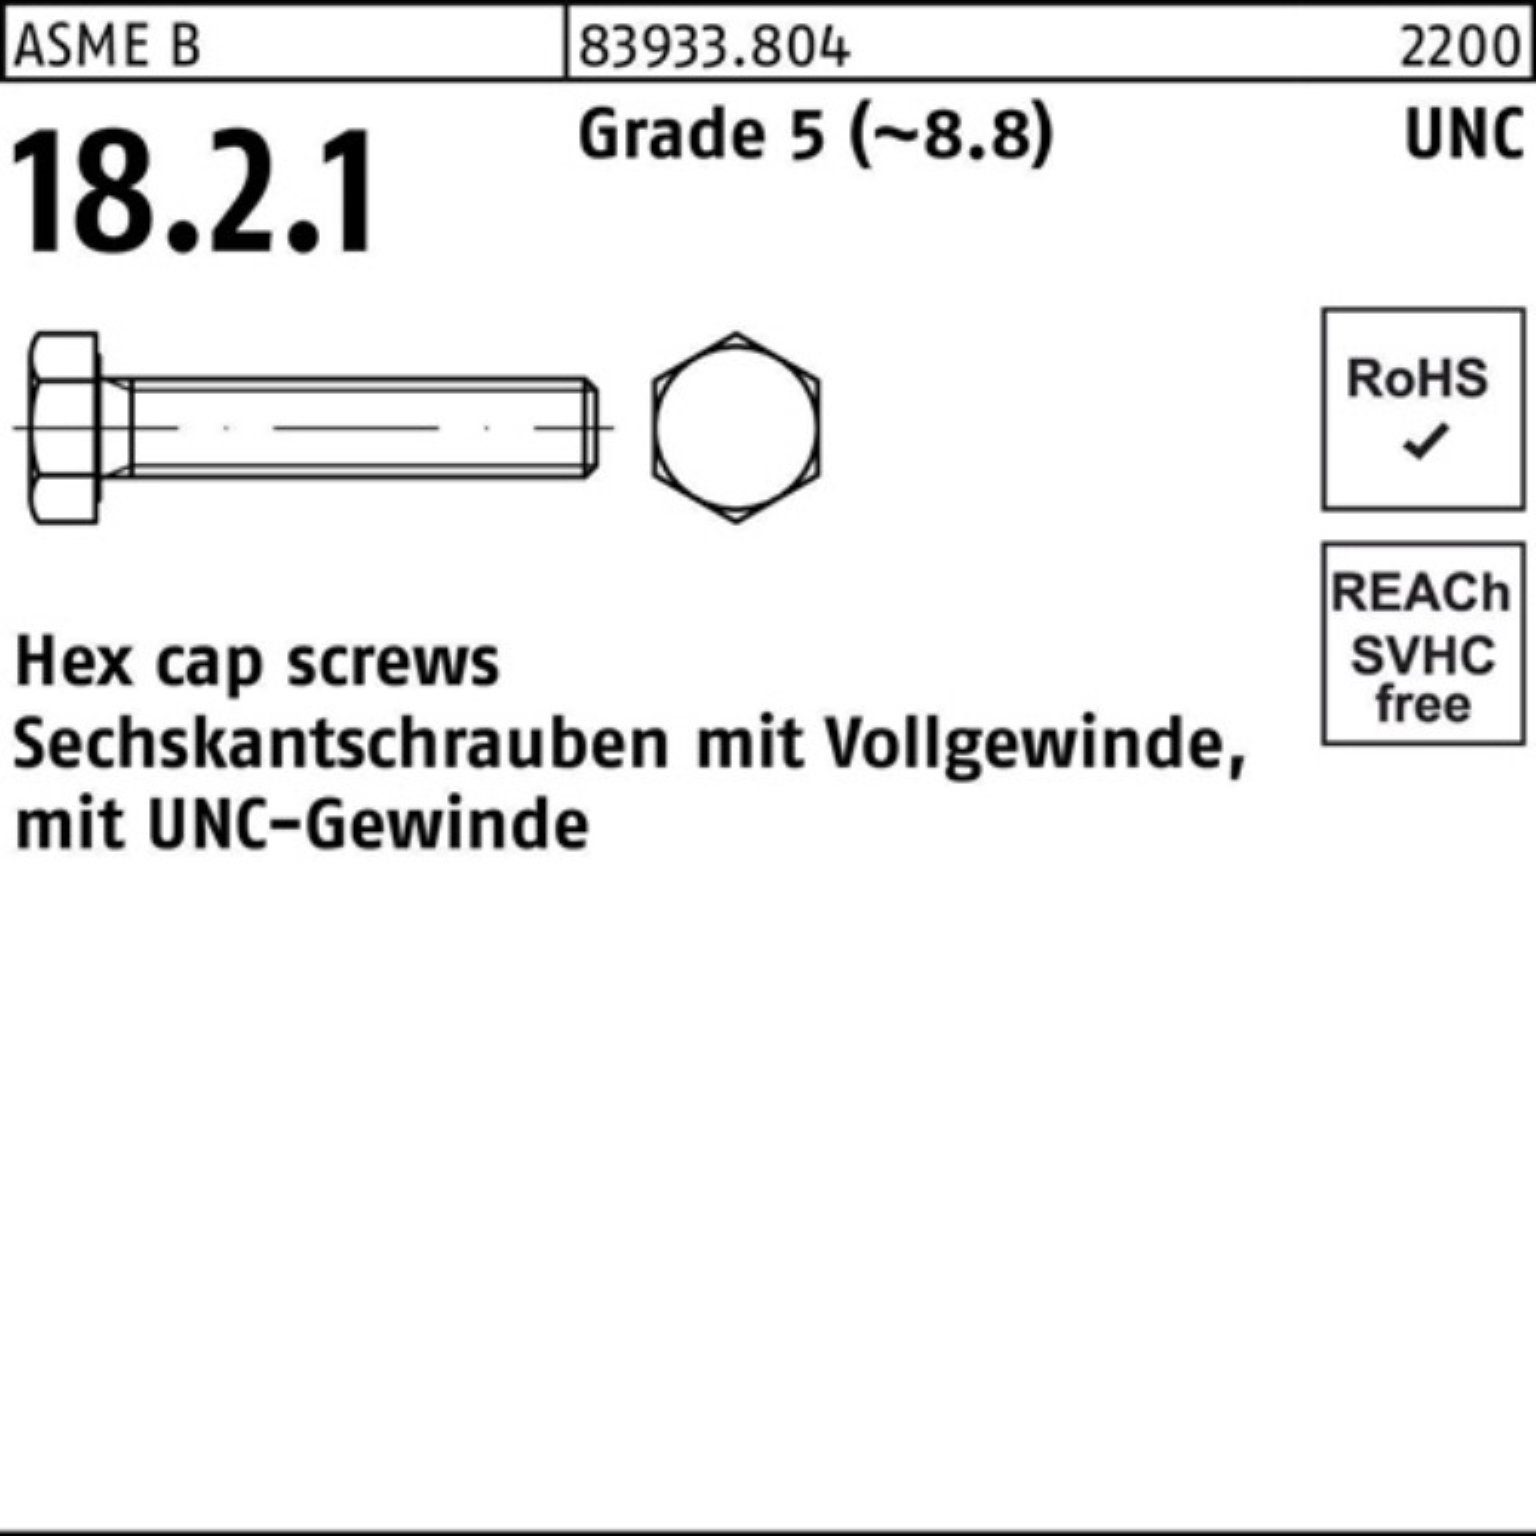 Reyher Sechskantschraube 100er Pack Sechskantschraube R 83933 UNC-Gewinde VG 5/16x 1/2 Grade 5